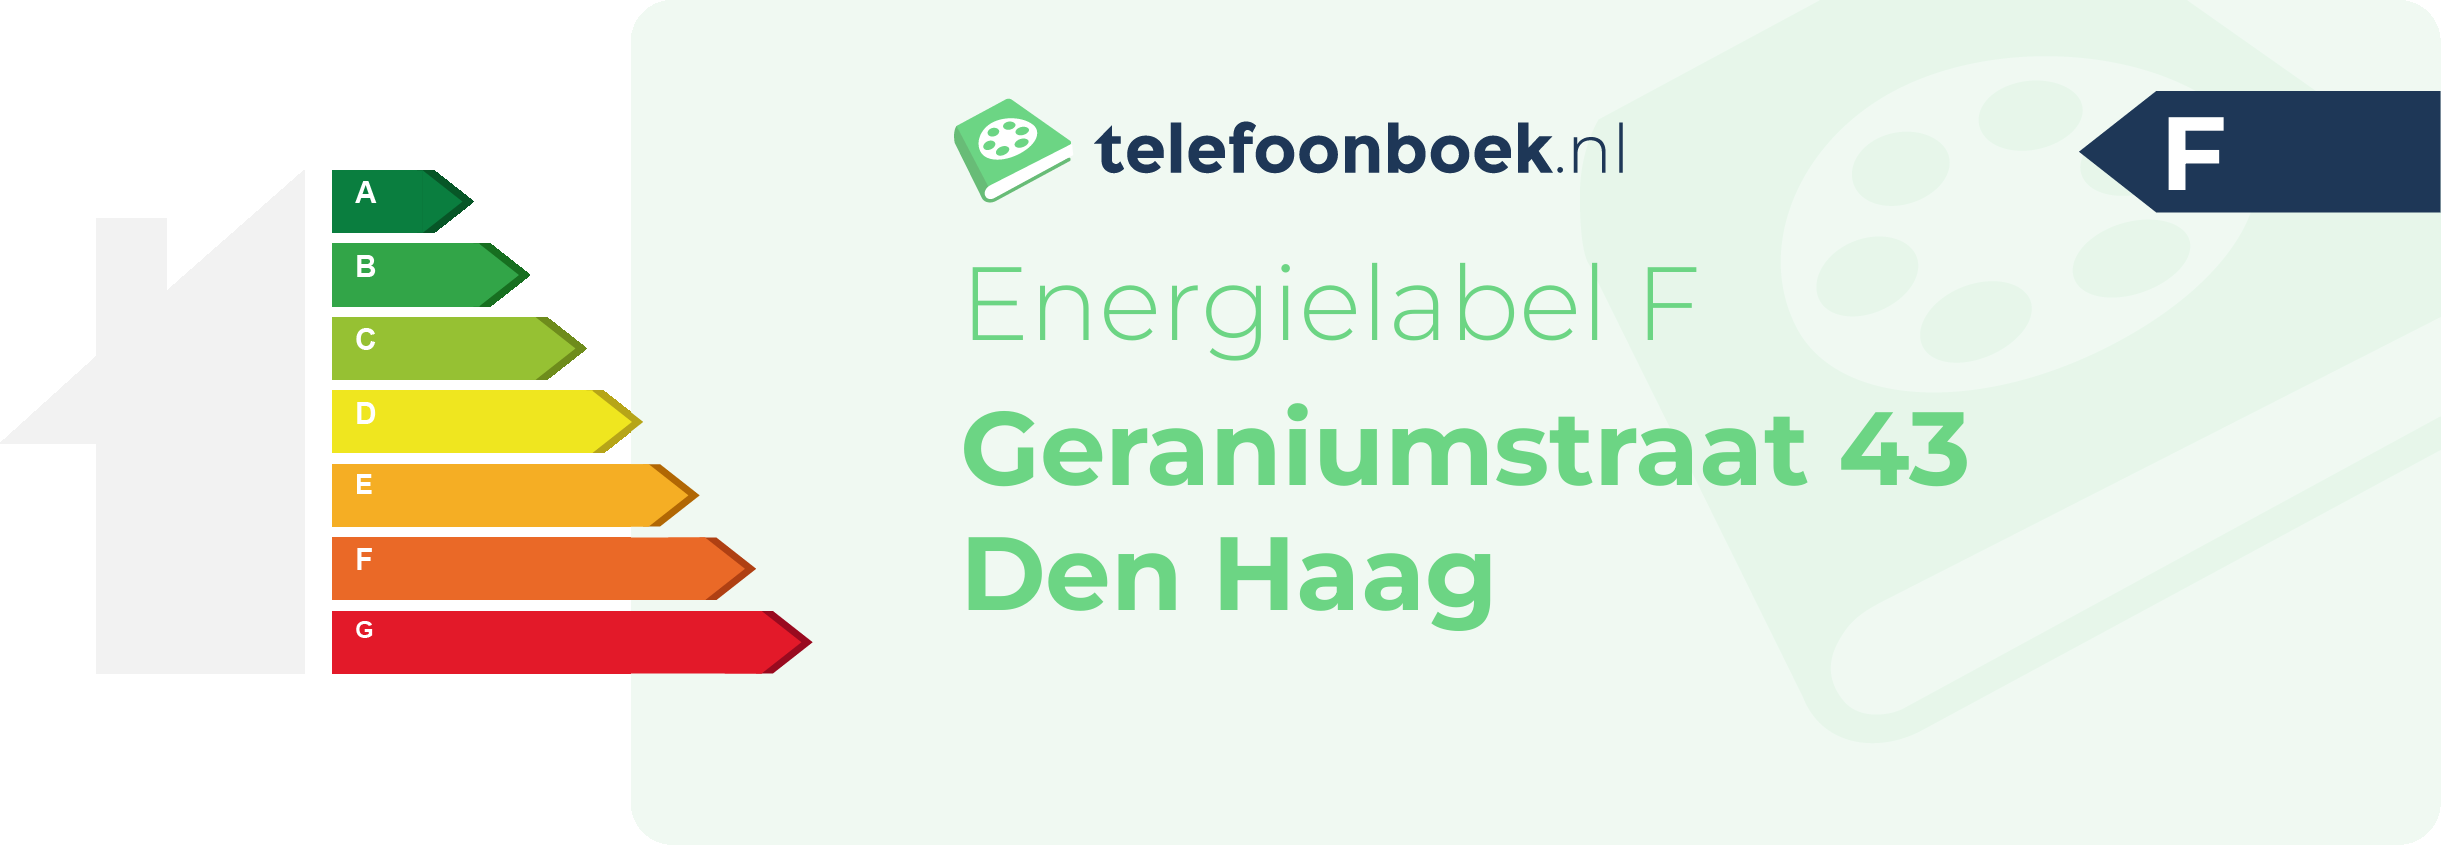 Energielabel Geraniumstraat 43 Den Haag